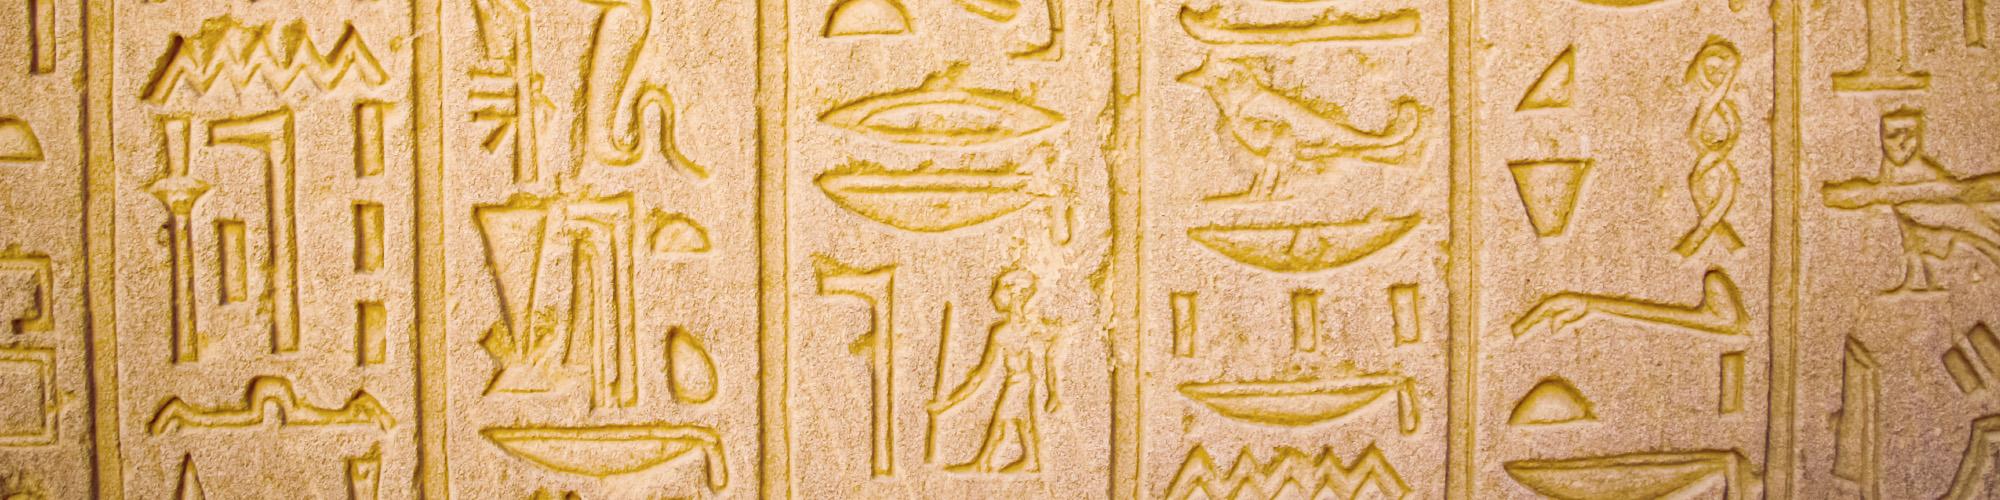 écriture hiéroglyphique égyptienne